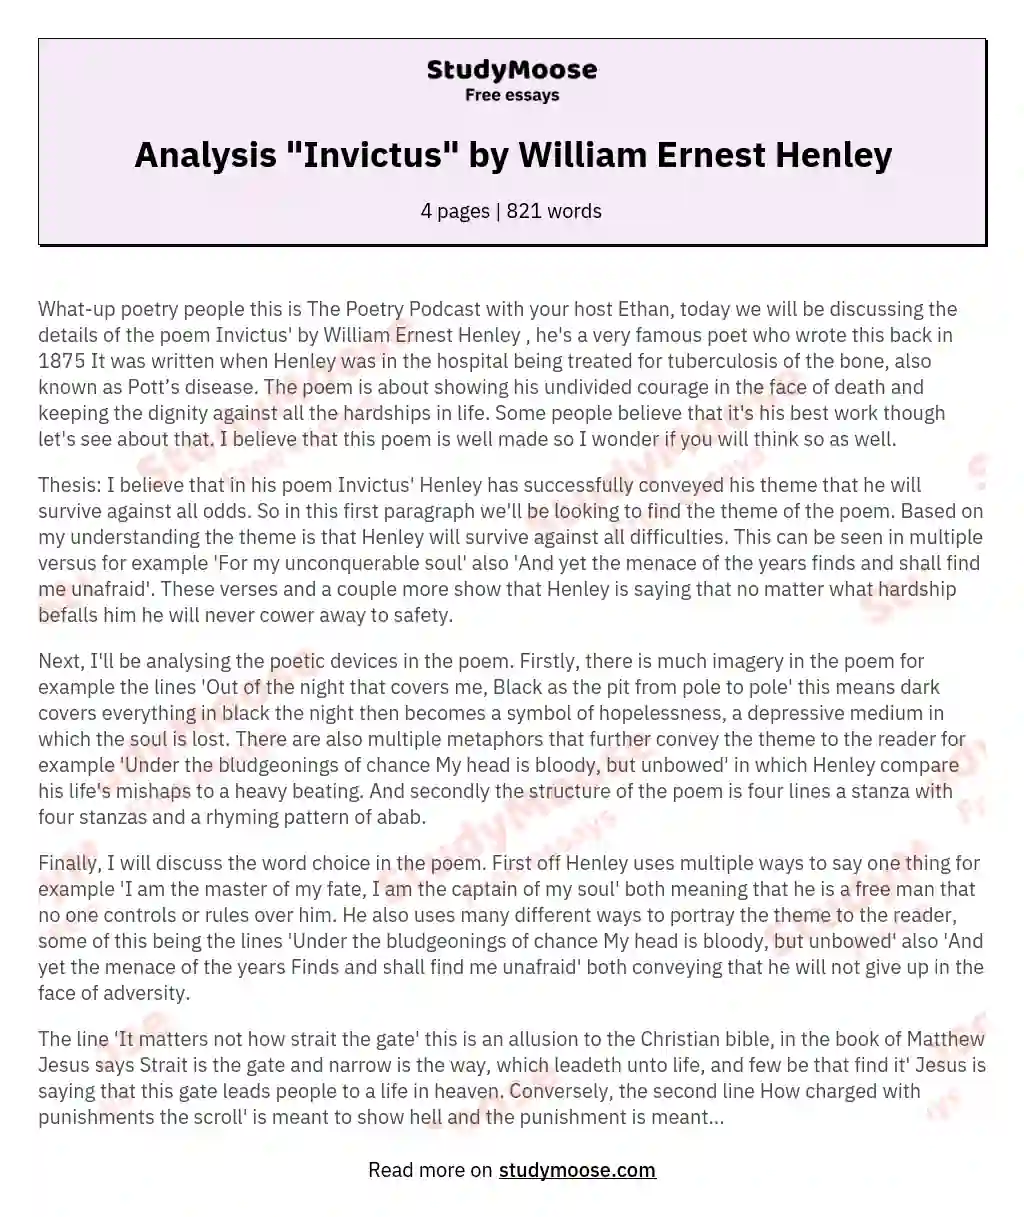 Analysis "Invictus" by William Ernest Henley essay